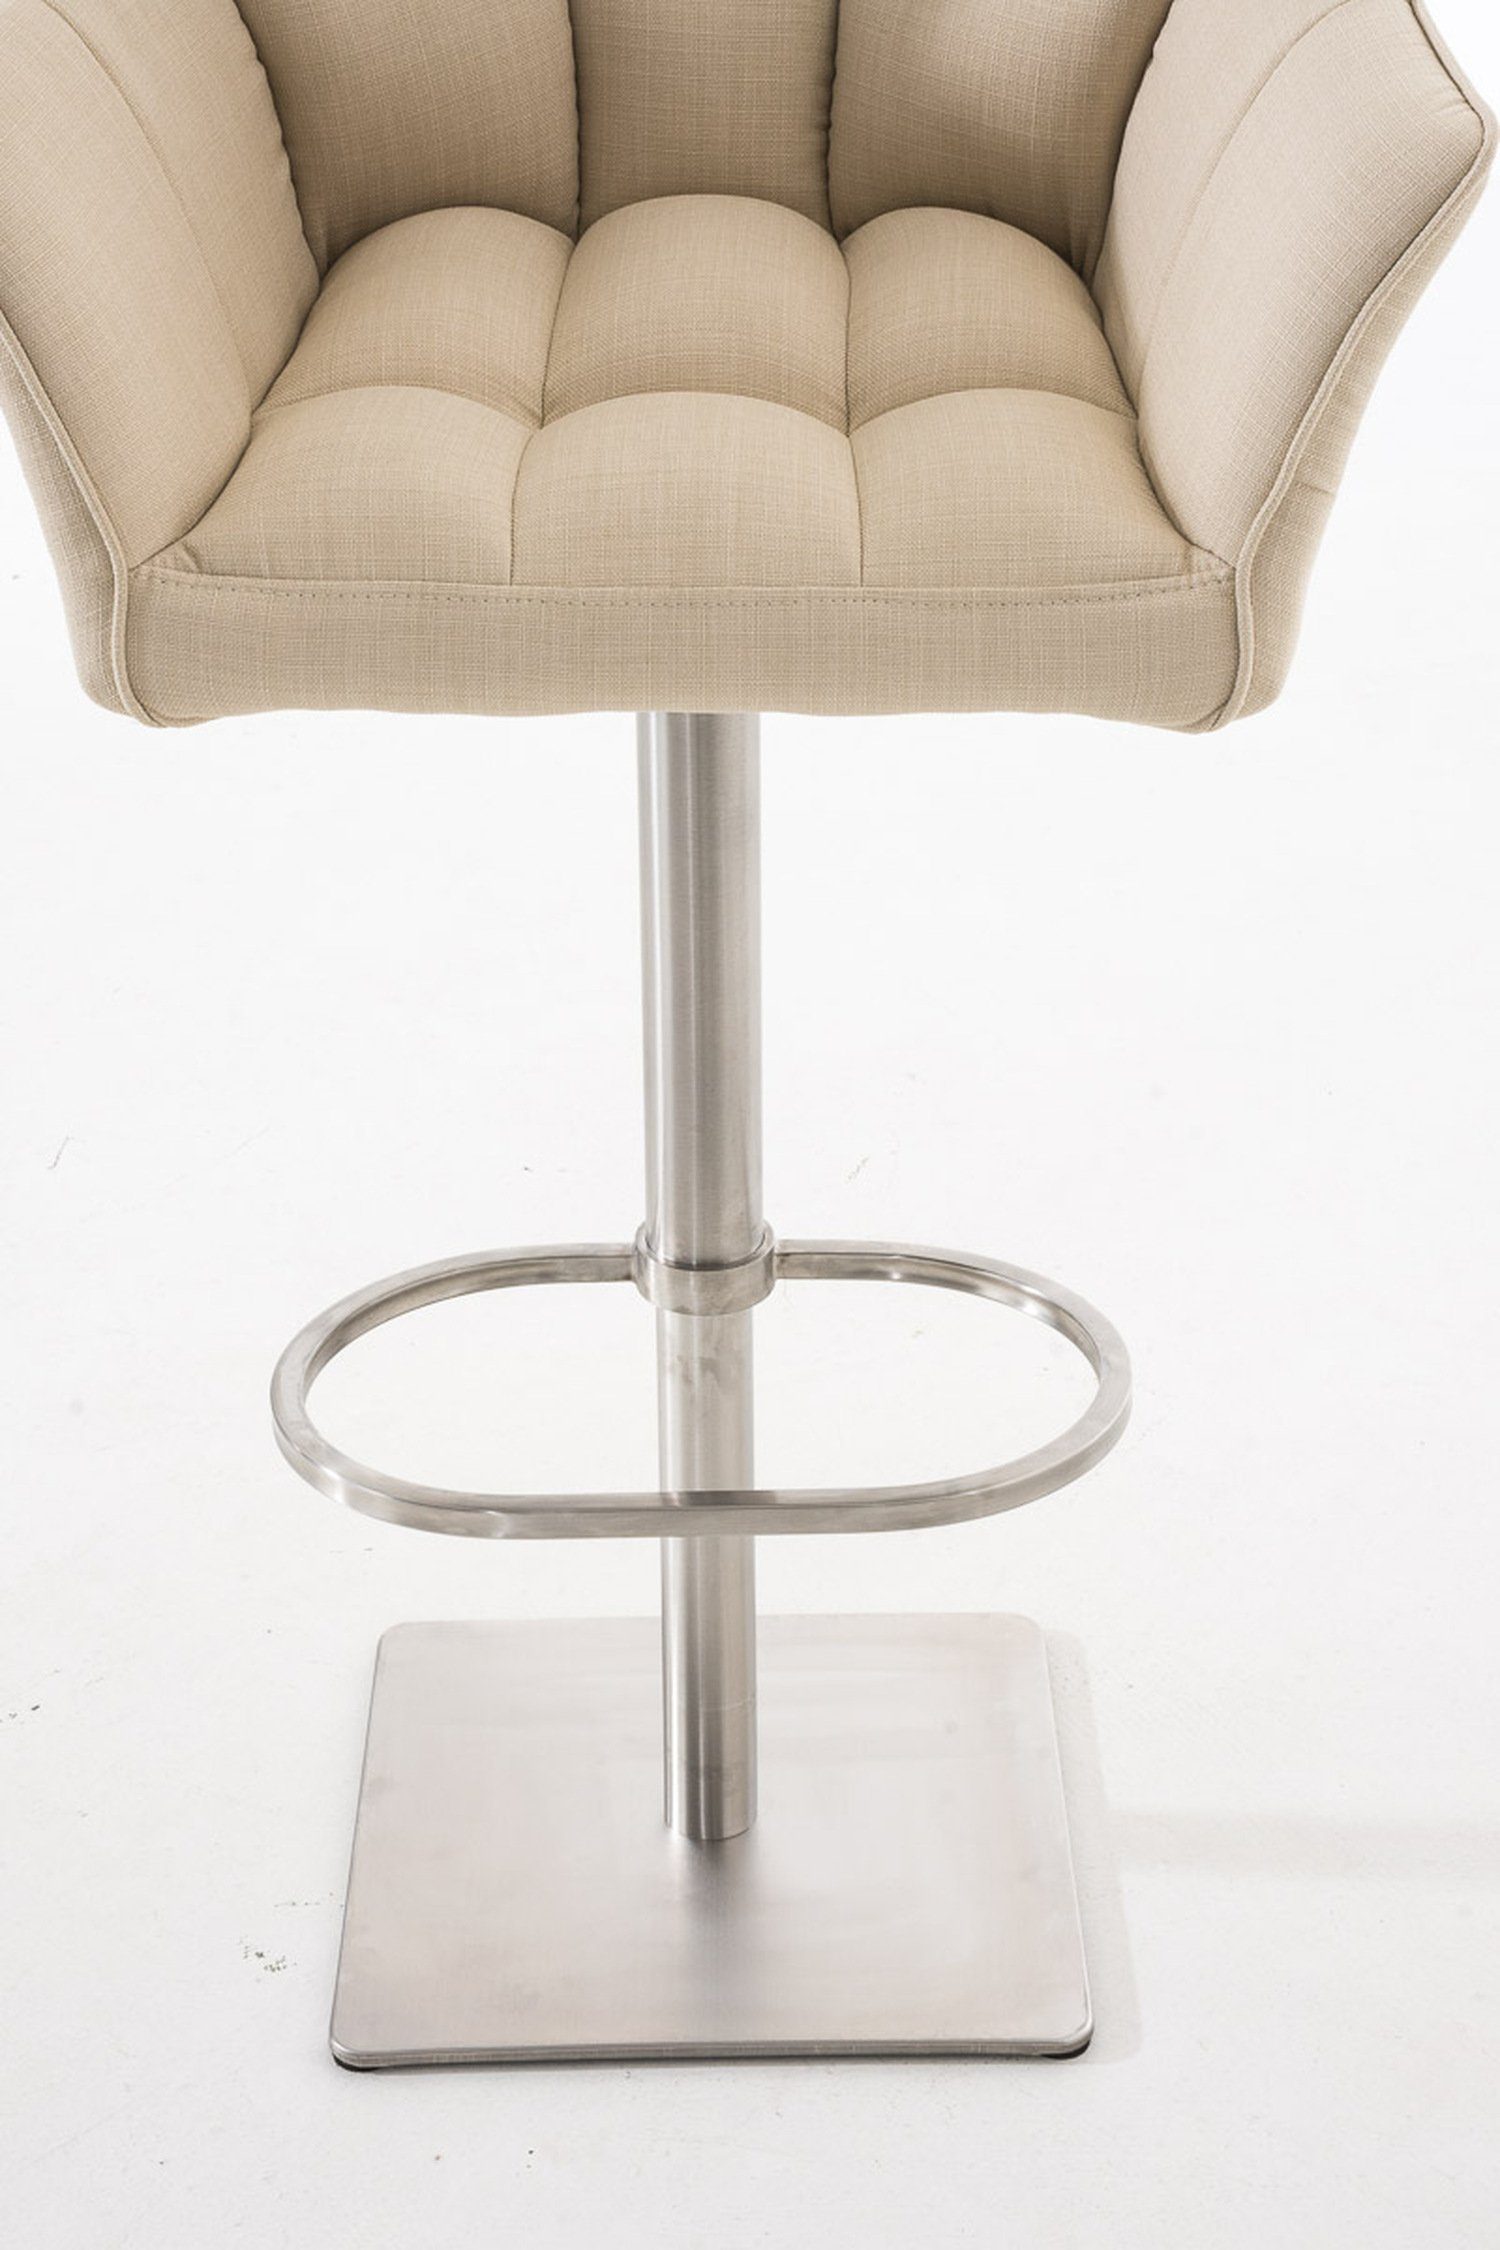 und drehbar Sitzfläche: Fußstütze Rückenlehne Barhocker Hocker für (mit - 360° & - TPFLiving - Küche), Damaso Theke Creme Edelstahl Gestell Stoff